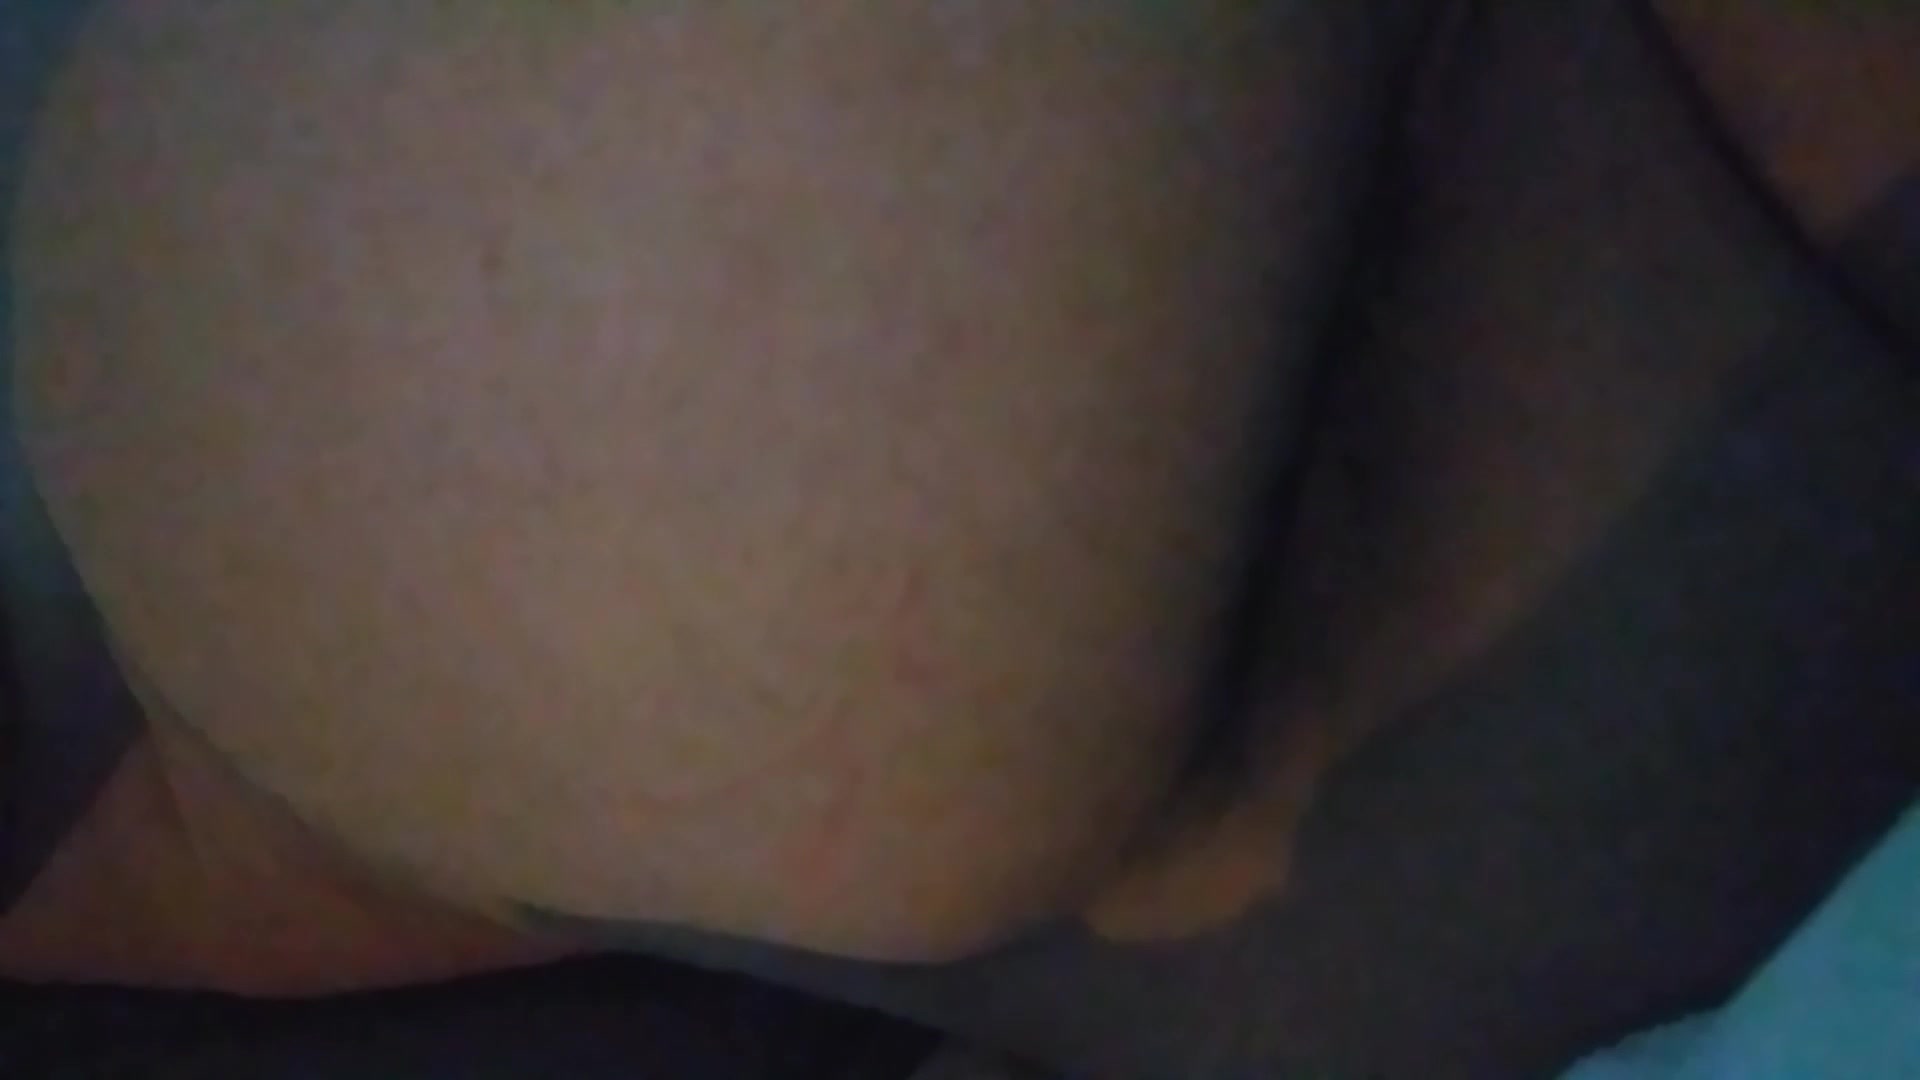 My butt - video 4